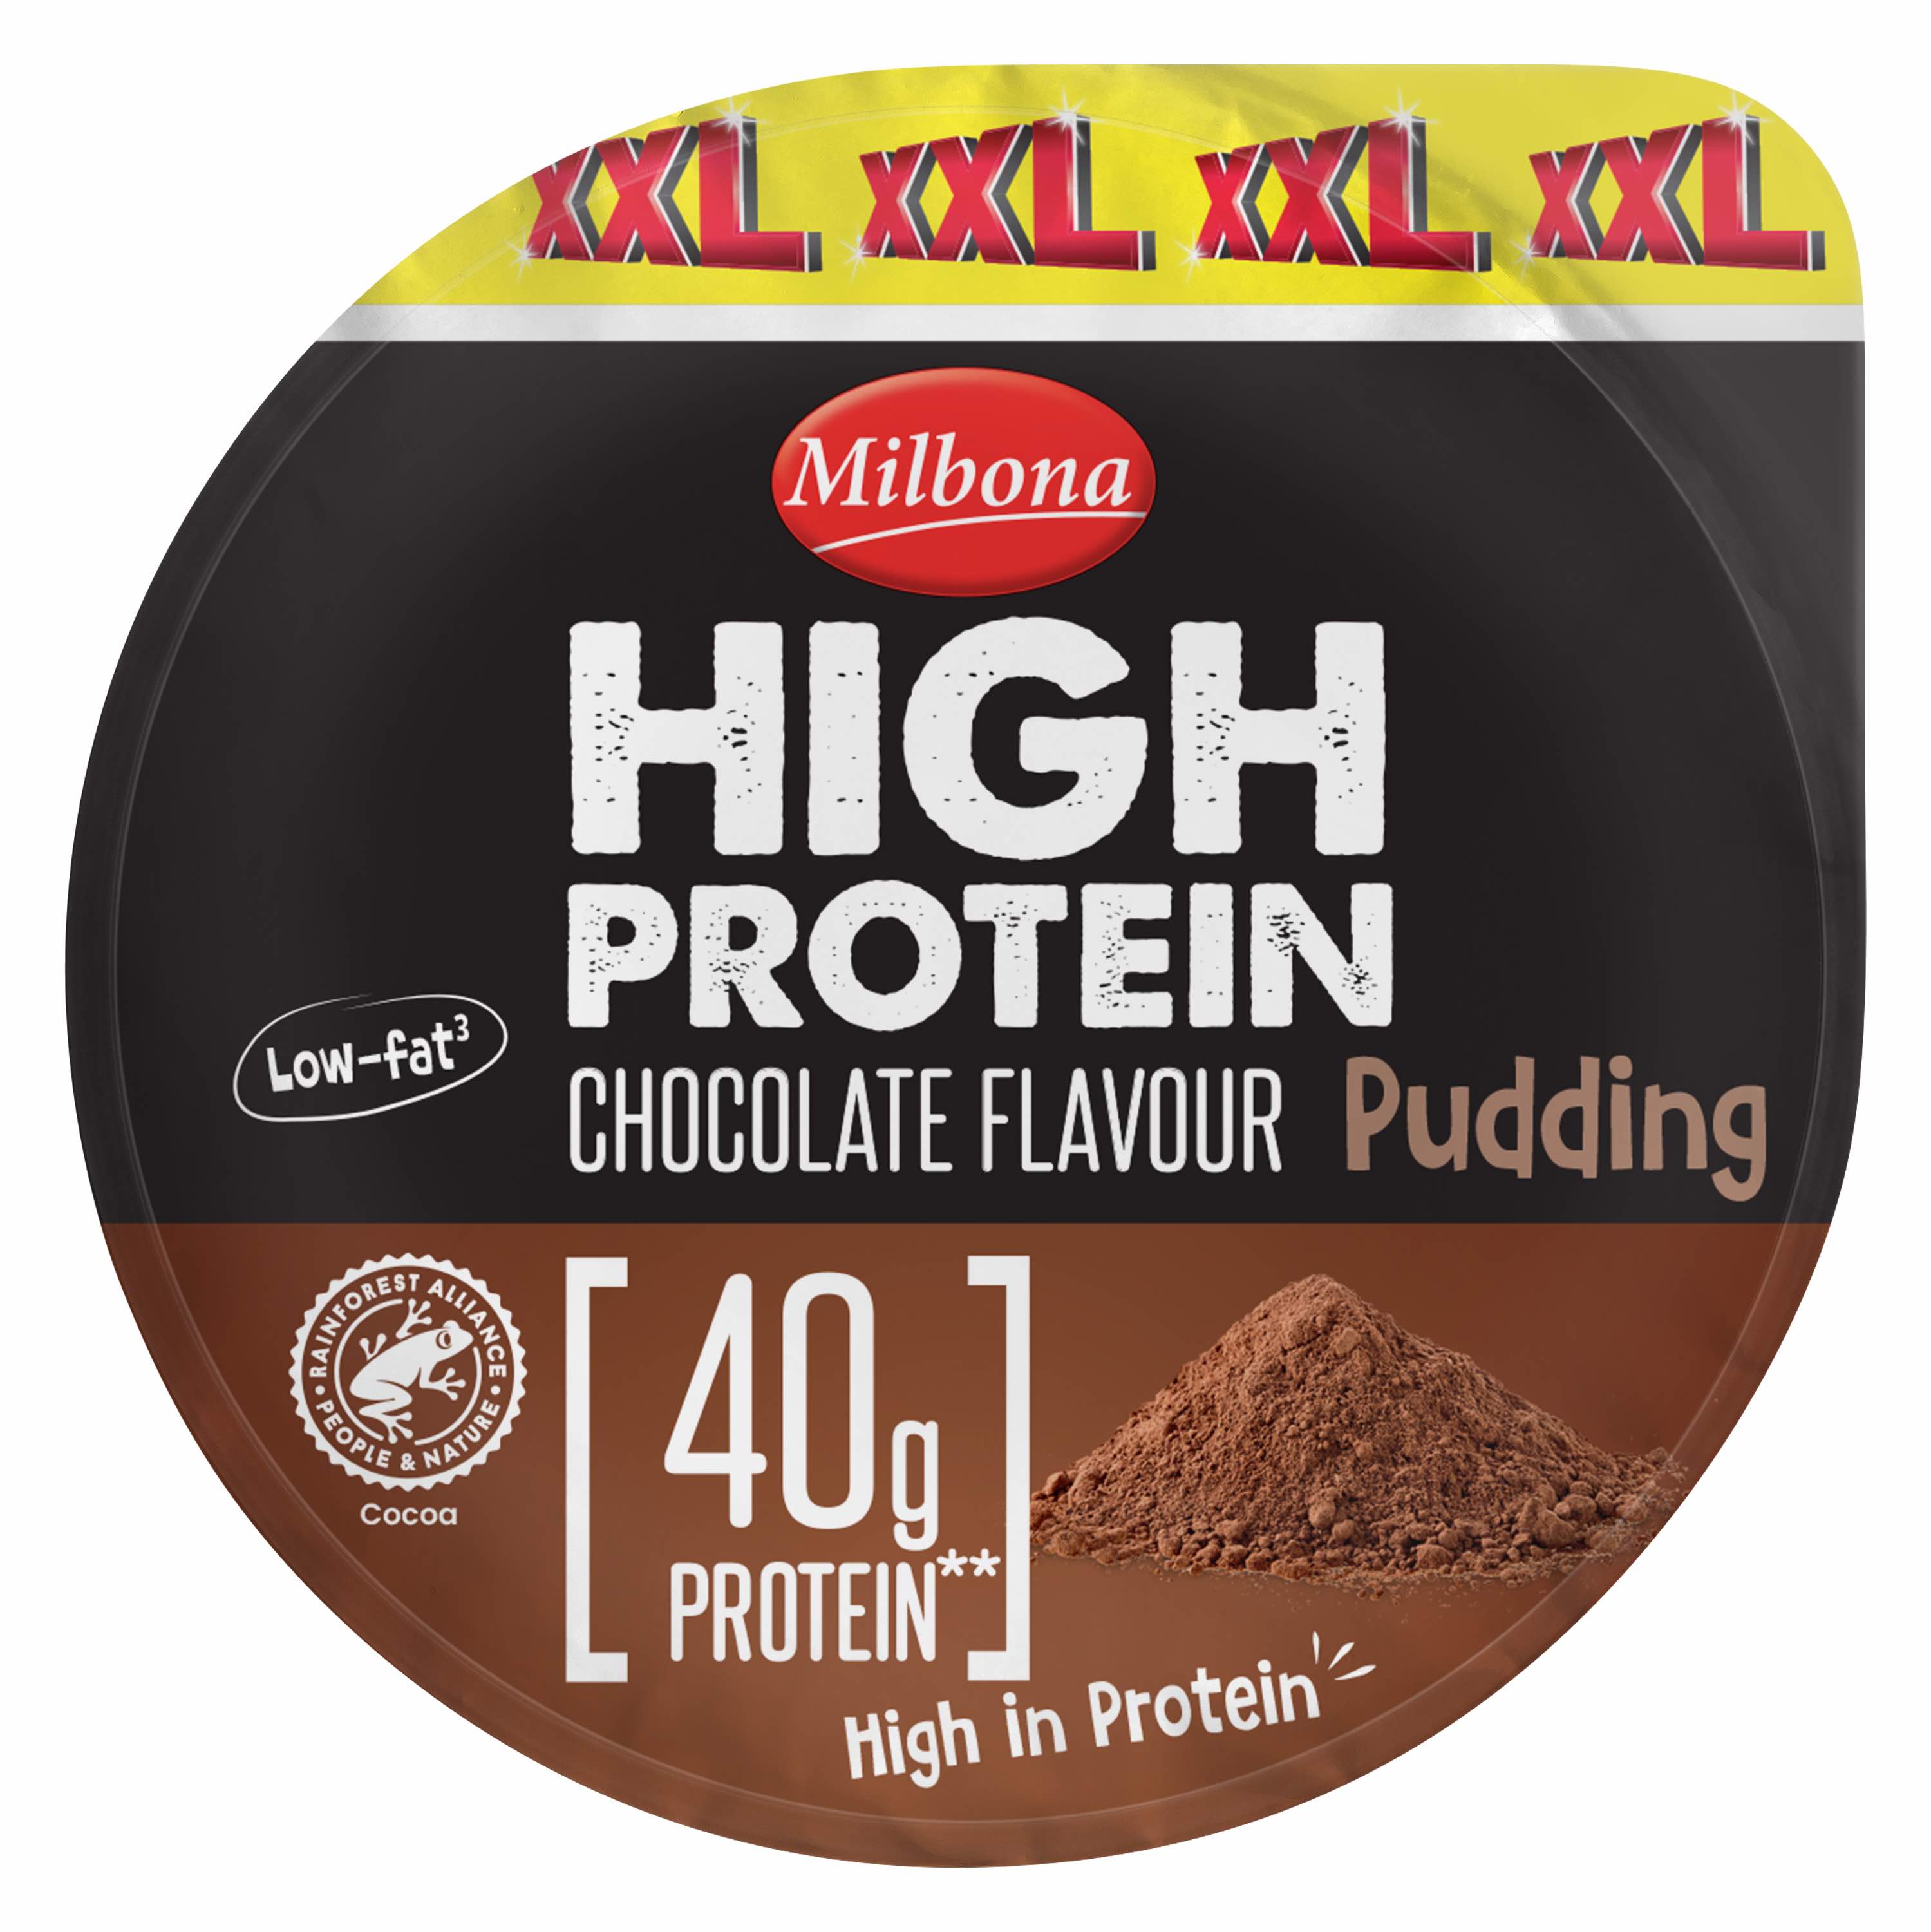 Procurez-vous plutôt le nouveau pudding protéiné XXL Milbona 40 g, 1,69 £ chez Lidl